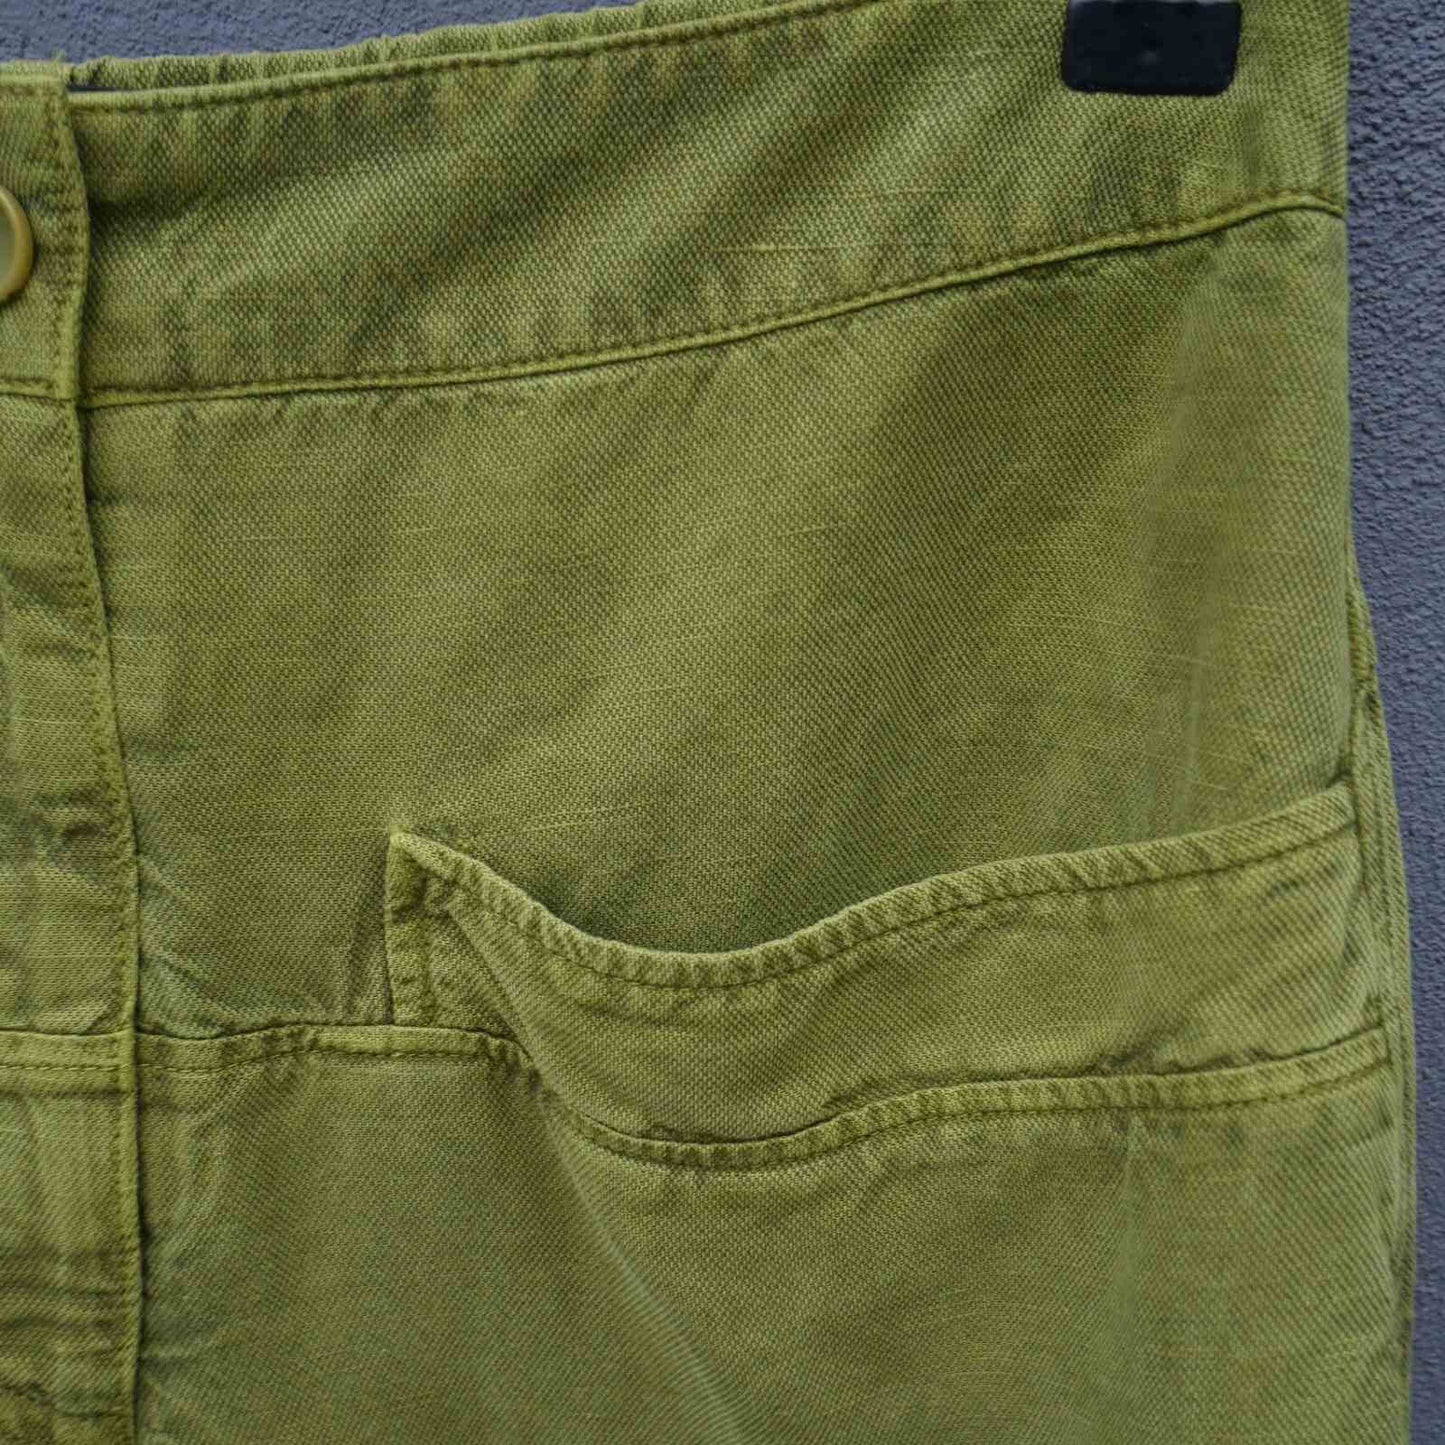 Forlomme på bukser fra Oska i hørblanding model Steja i pistachio